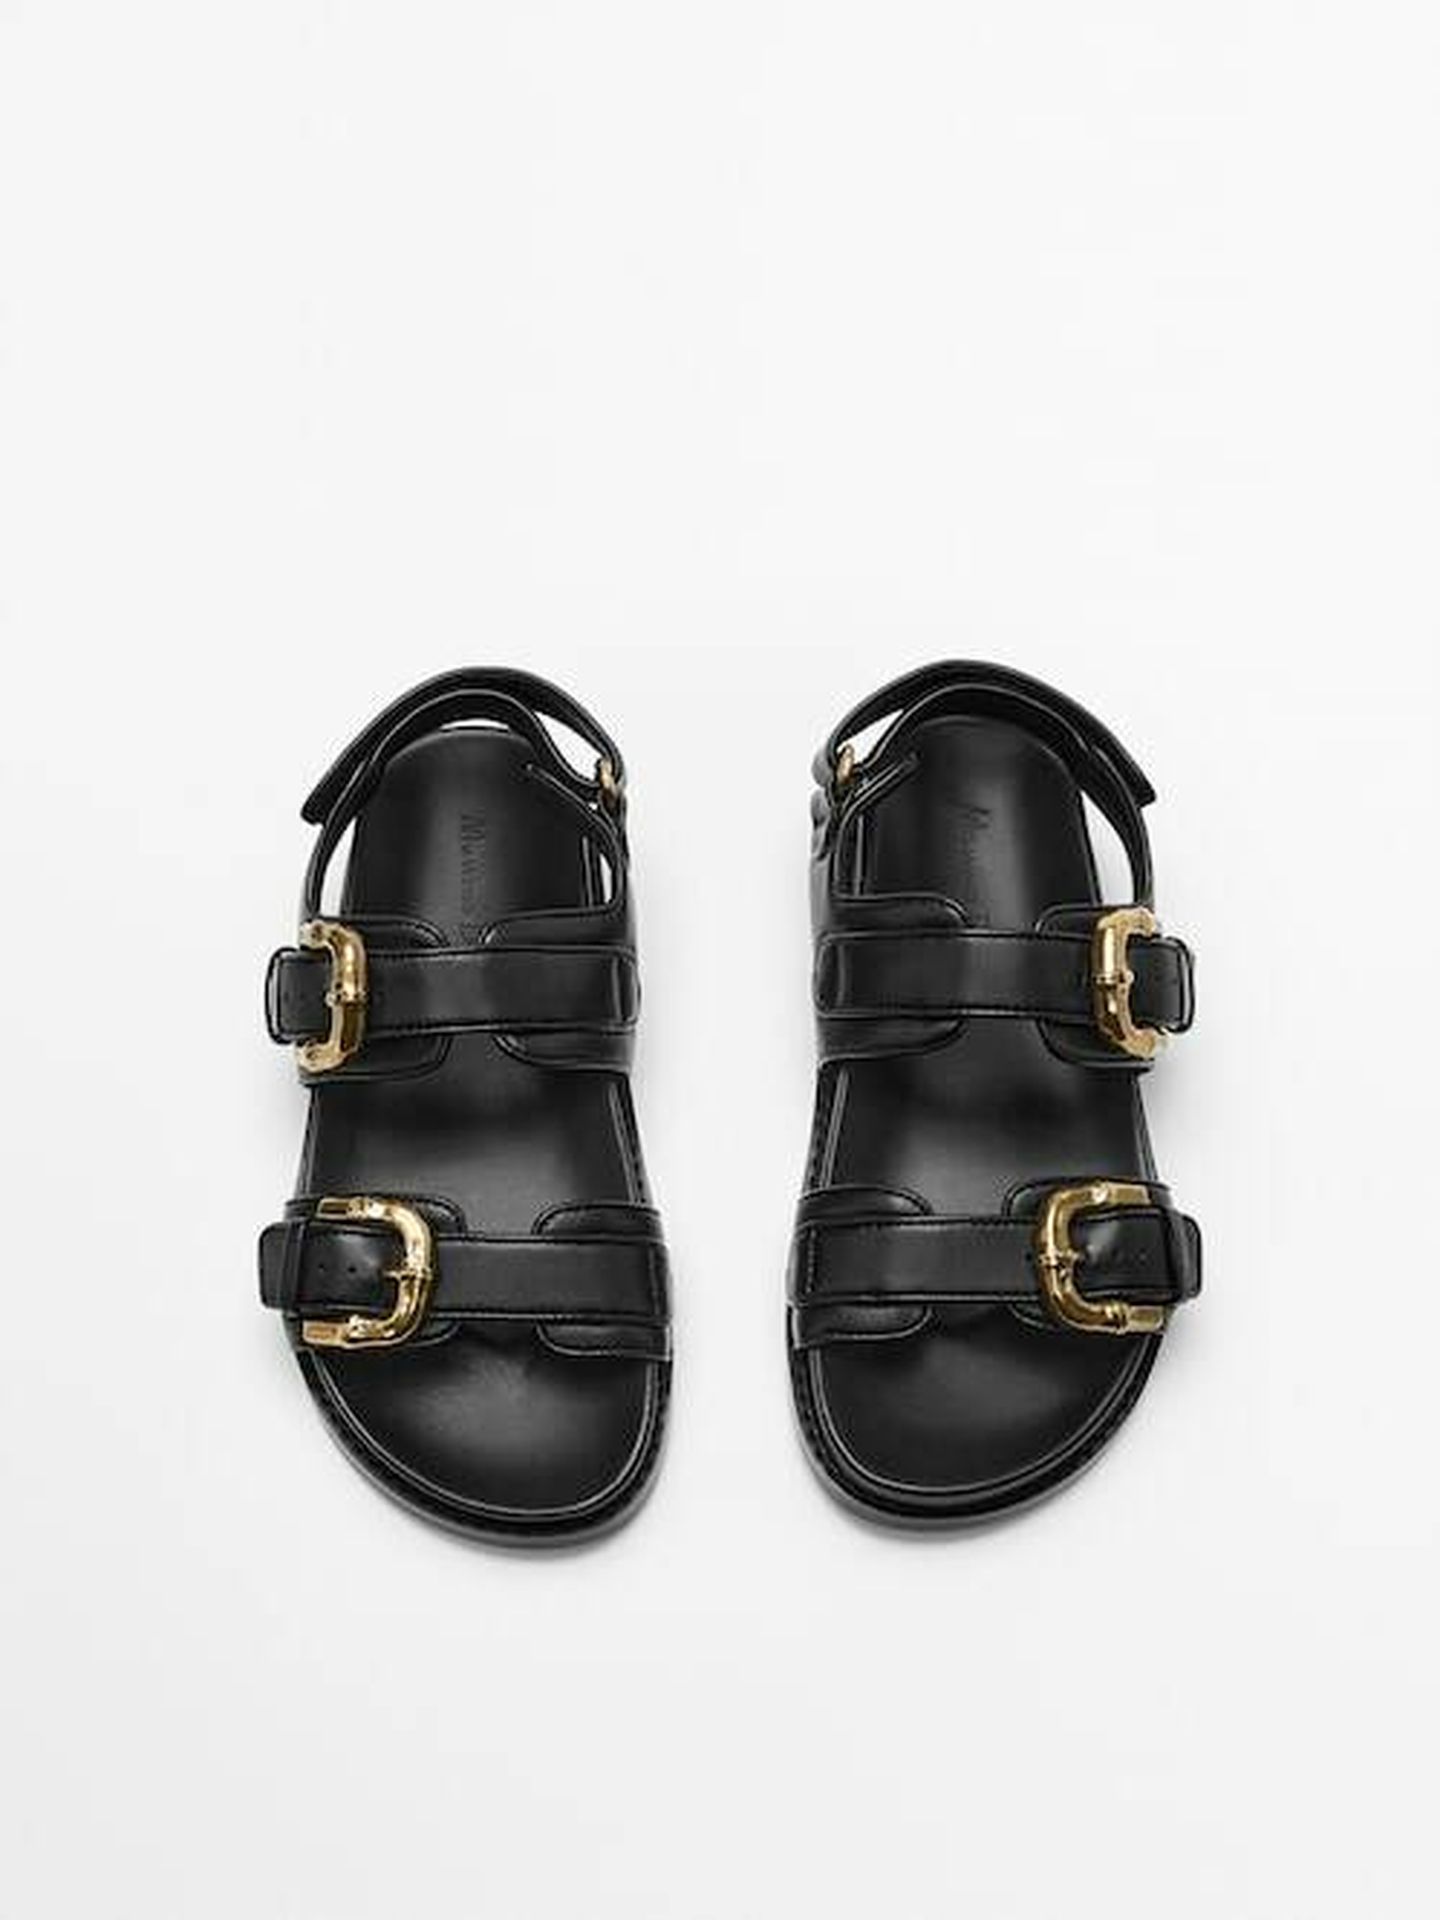 Las sandalias de Massimo Dutti. (Cortesía)